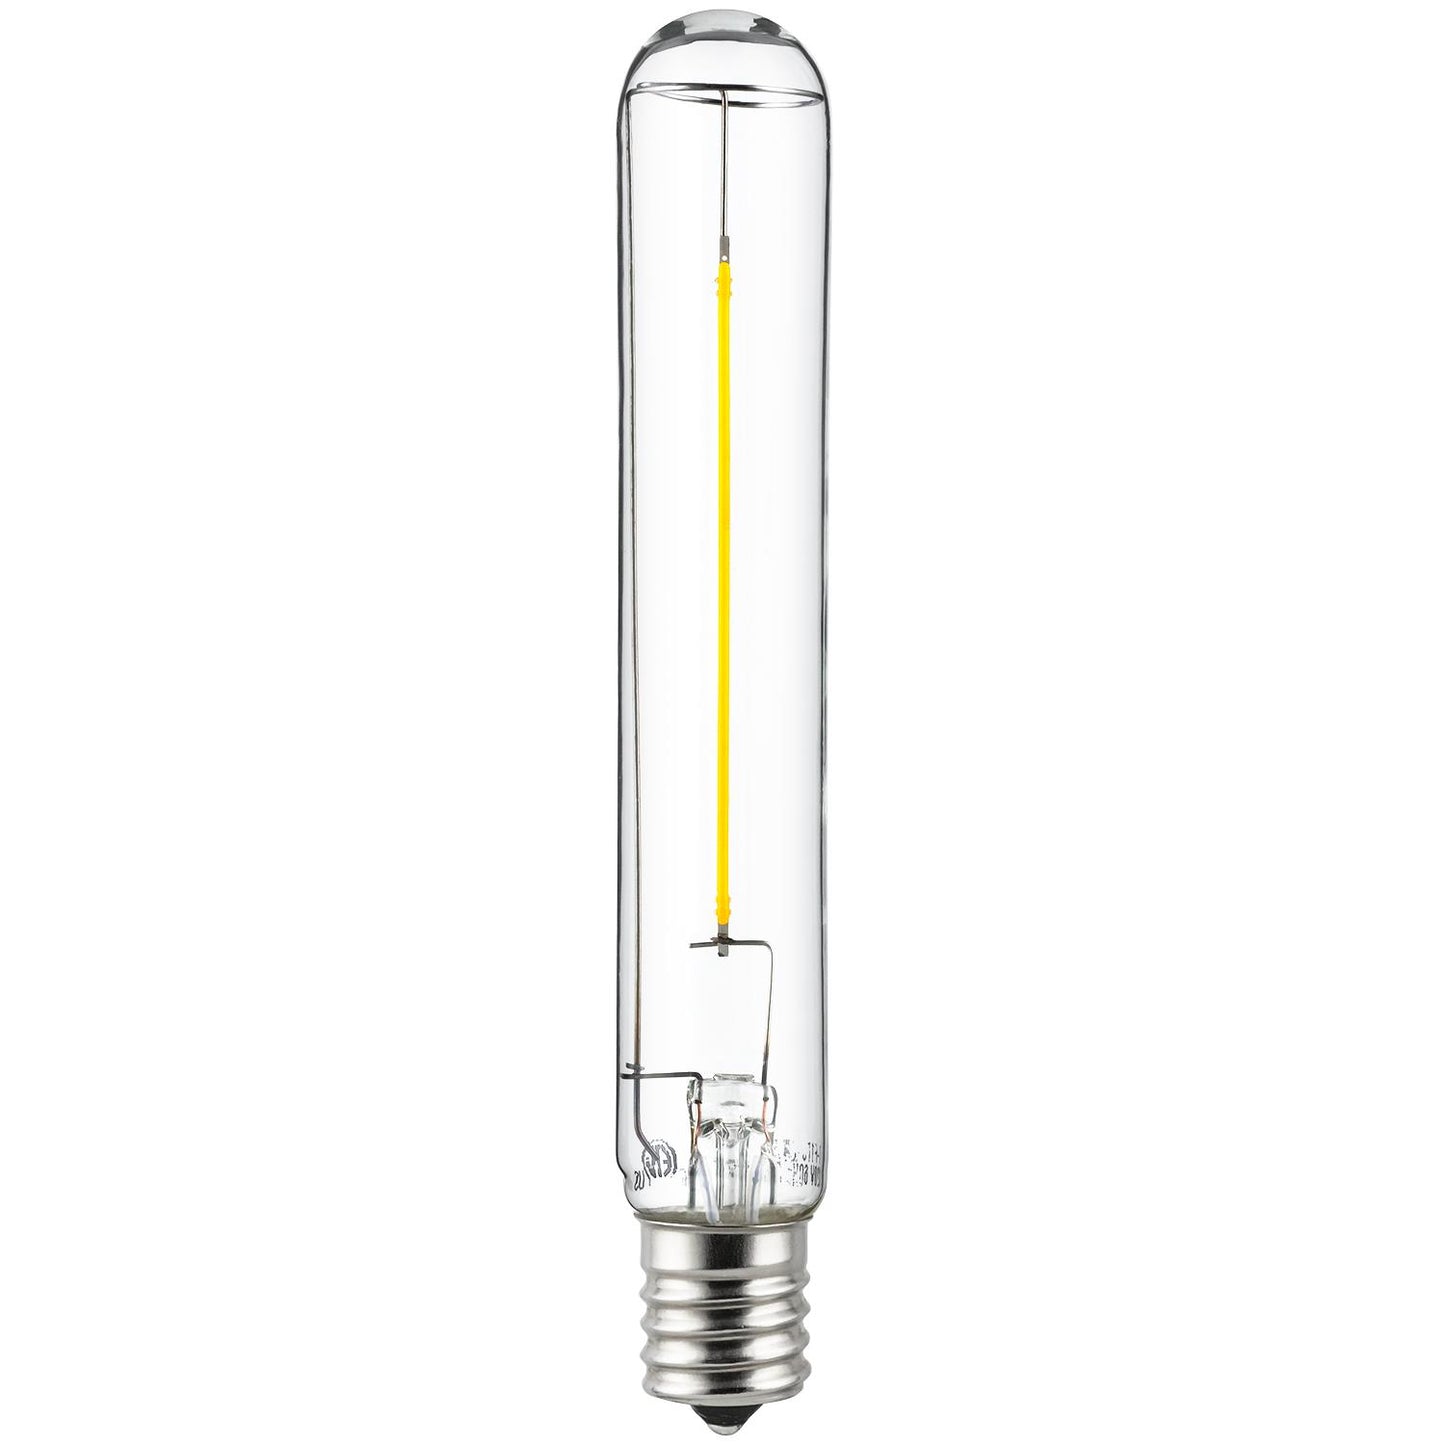 Sunlite 81074 LED Filament T6 Tube 2-Watt (25 Watt Equivalent) Clear Light Bulb, 2700K - Warm White